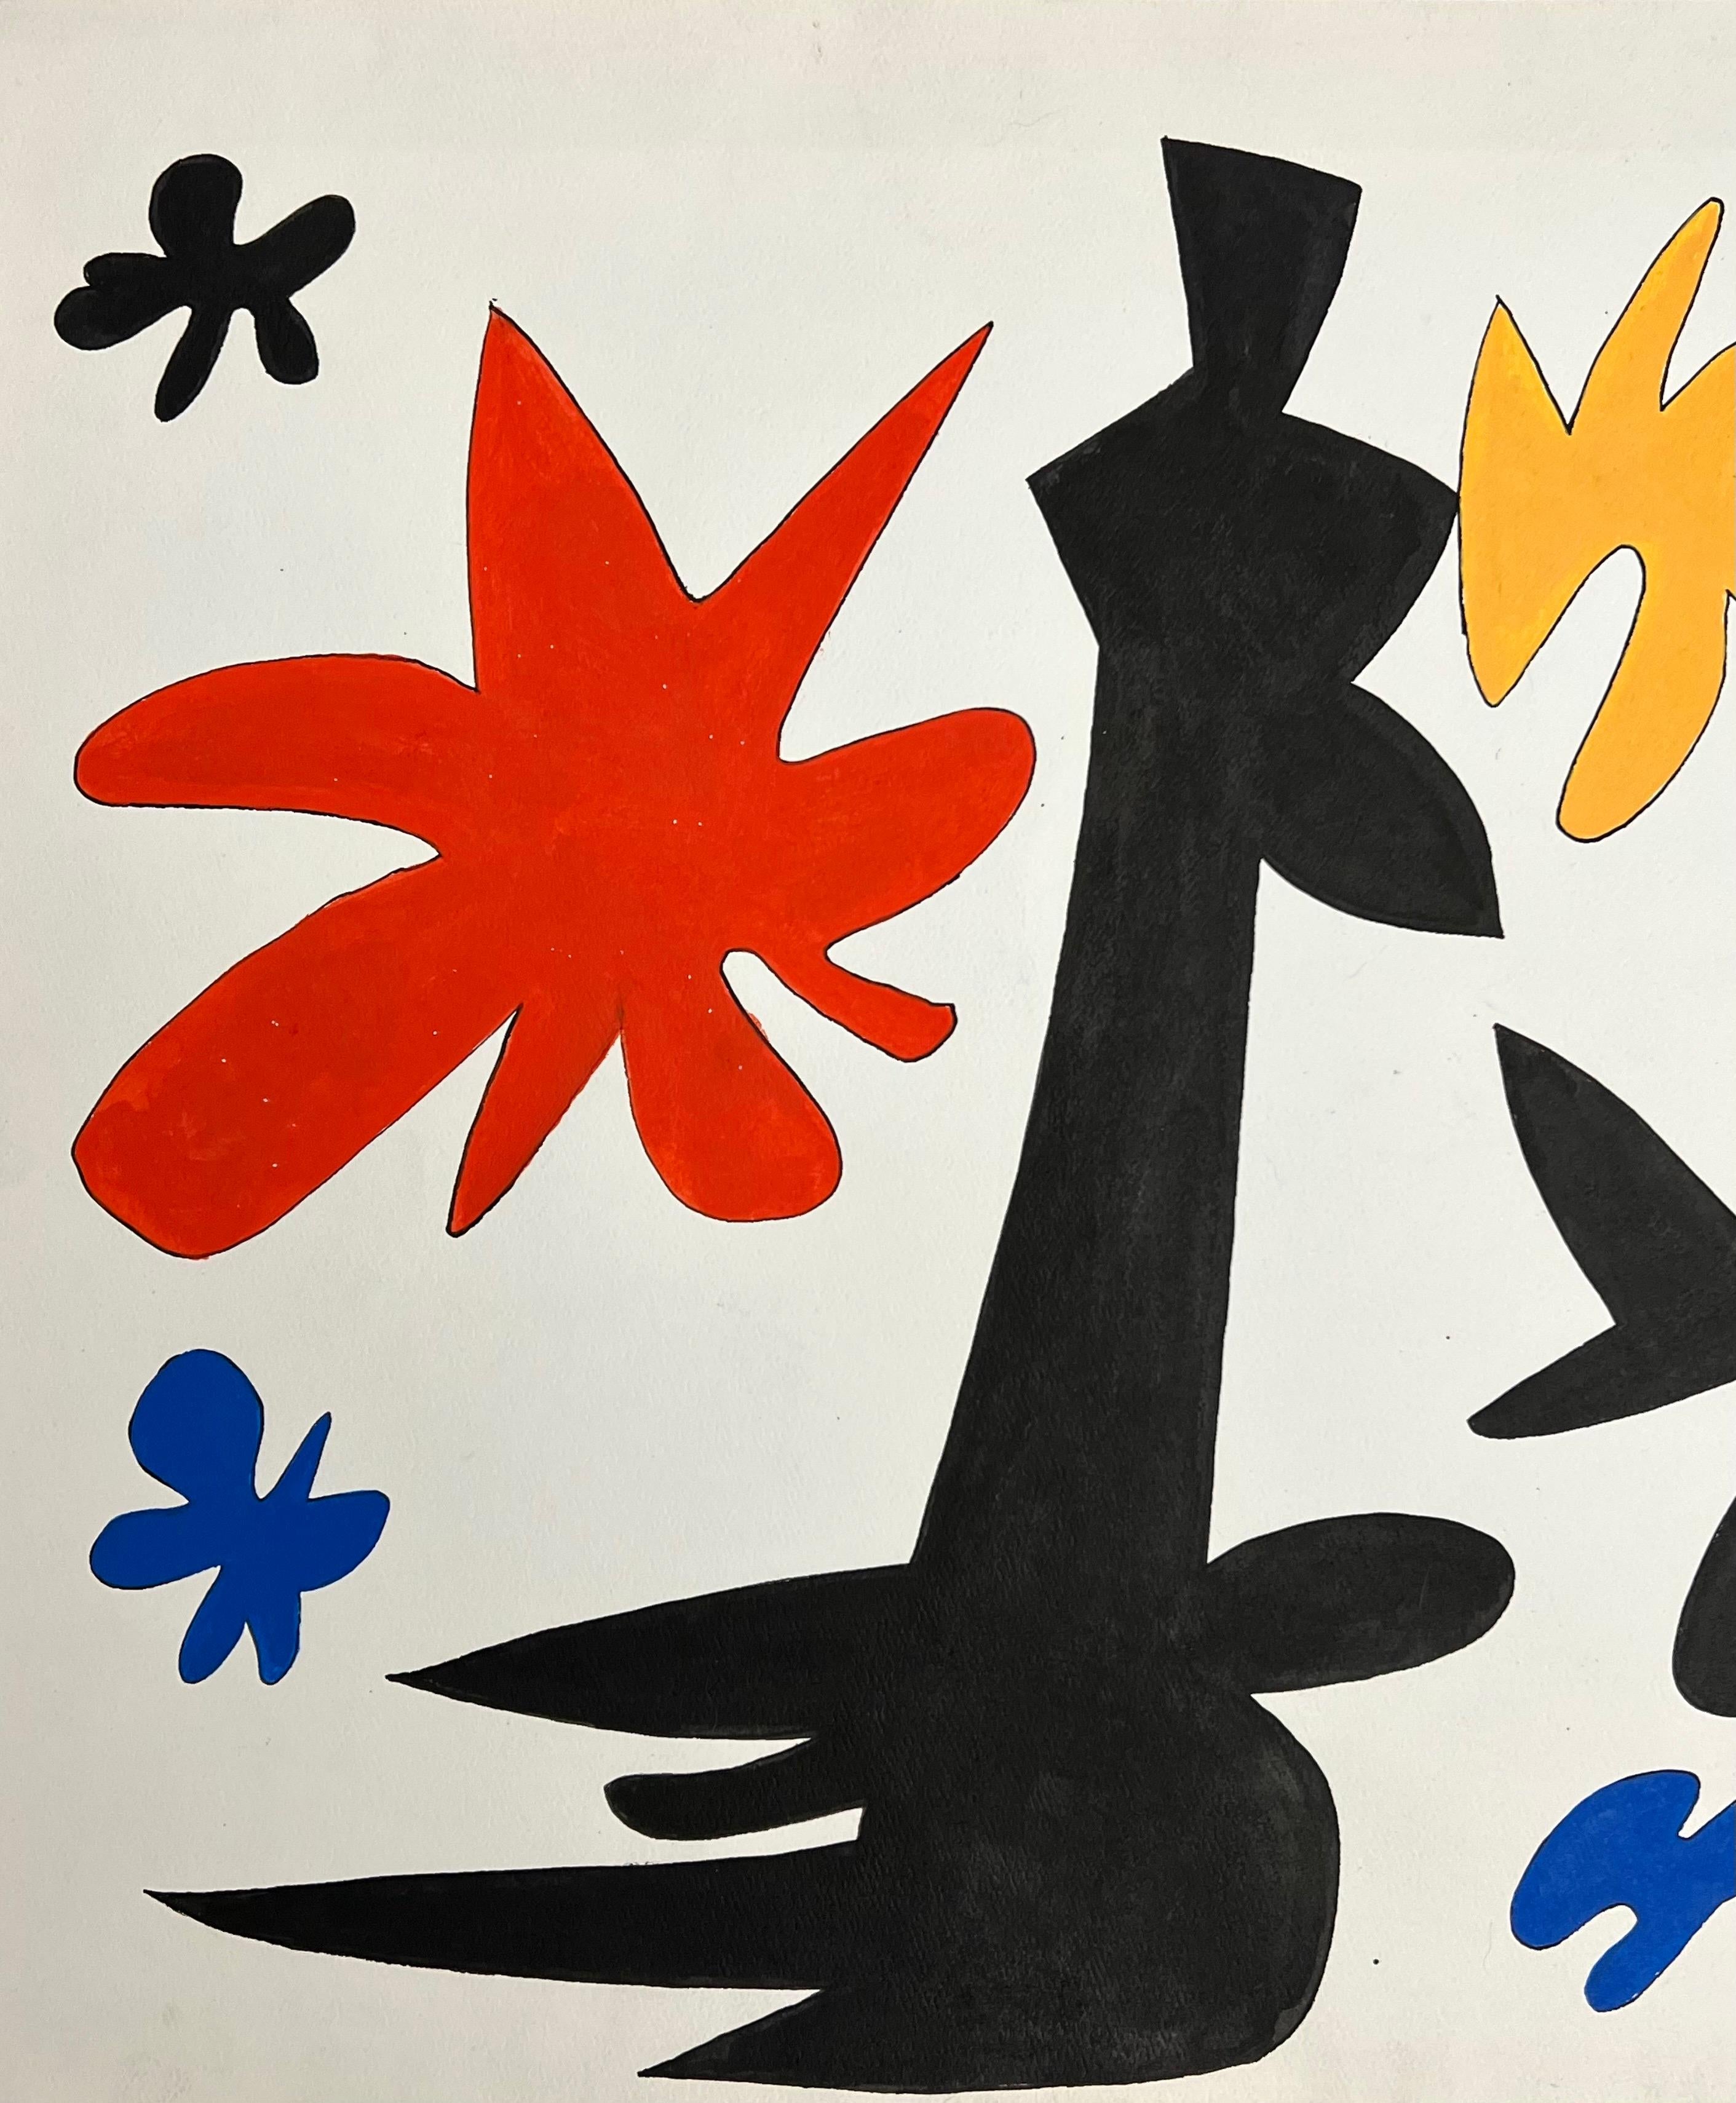 Sehr dekoratives Paar Gouachen im Stil von Alexander Calder aus den 1980er Jahren von einem Künstler aus dem Nordosten. Diese haben eine große visuelle Wirkung in dieser primären Calder-Palette und sind unglaublich visuell. Rückseitig datiert.